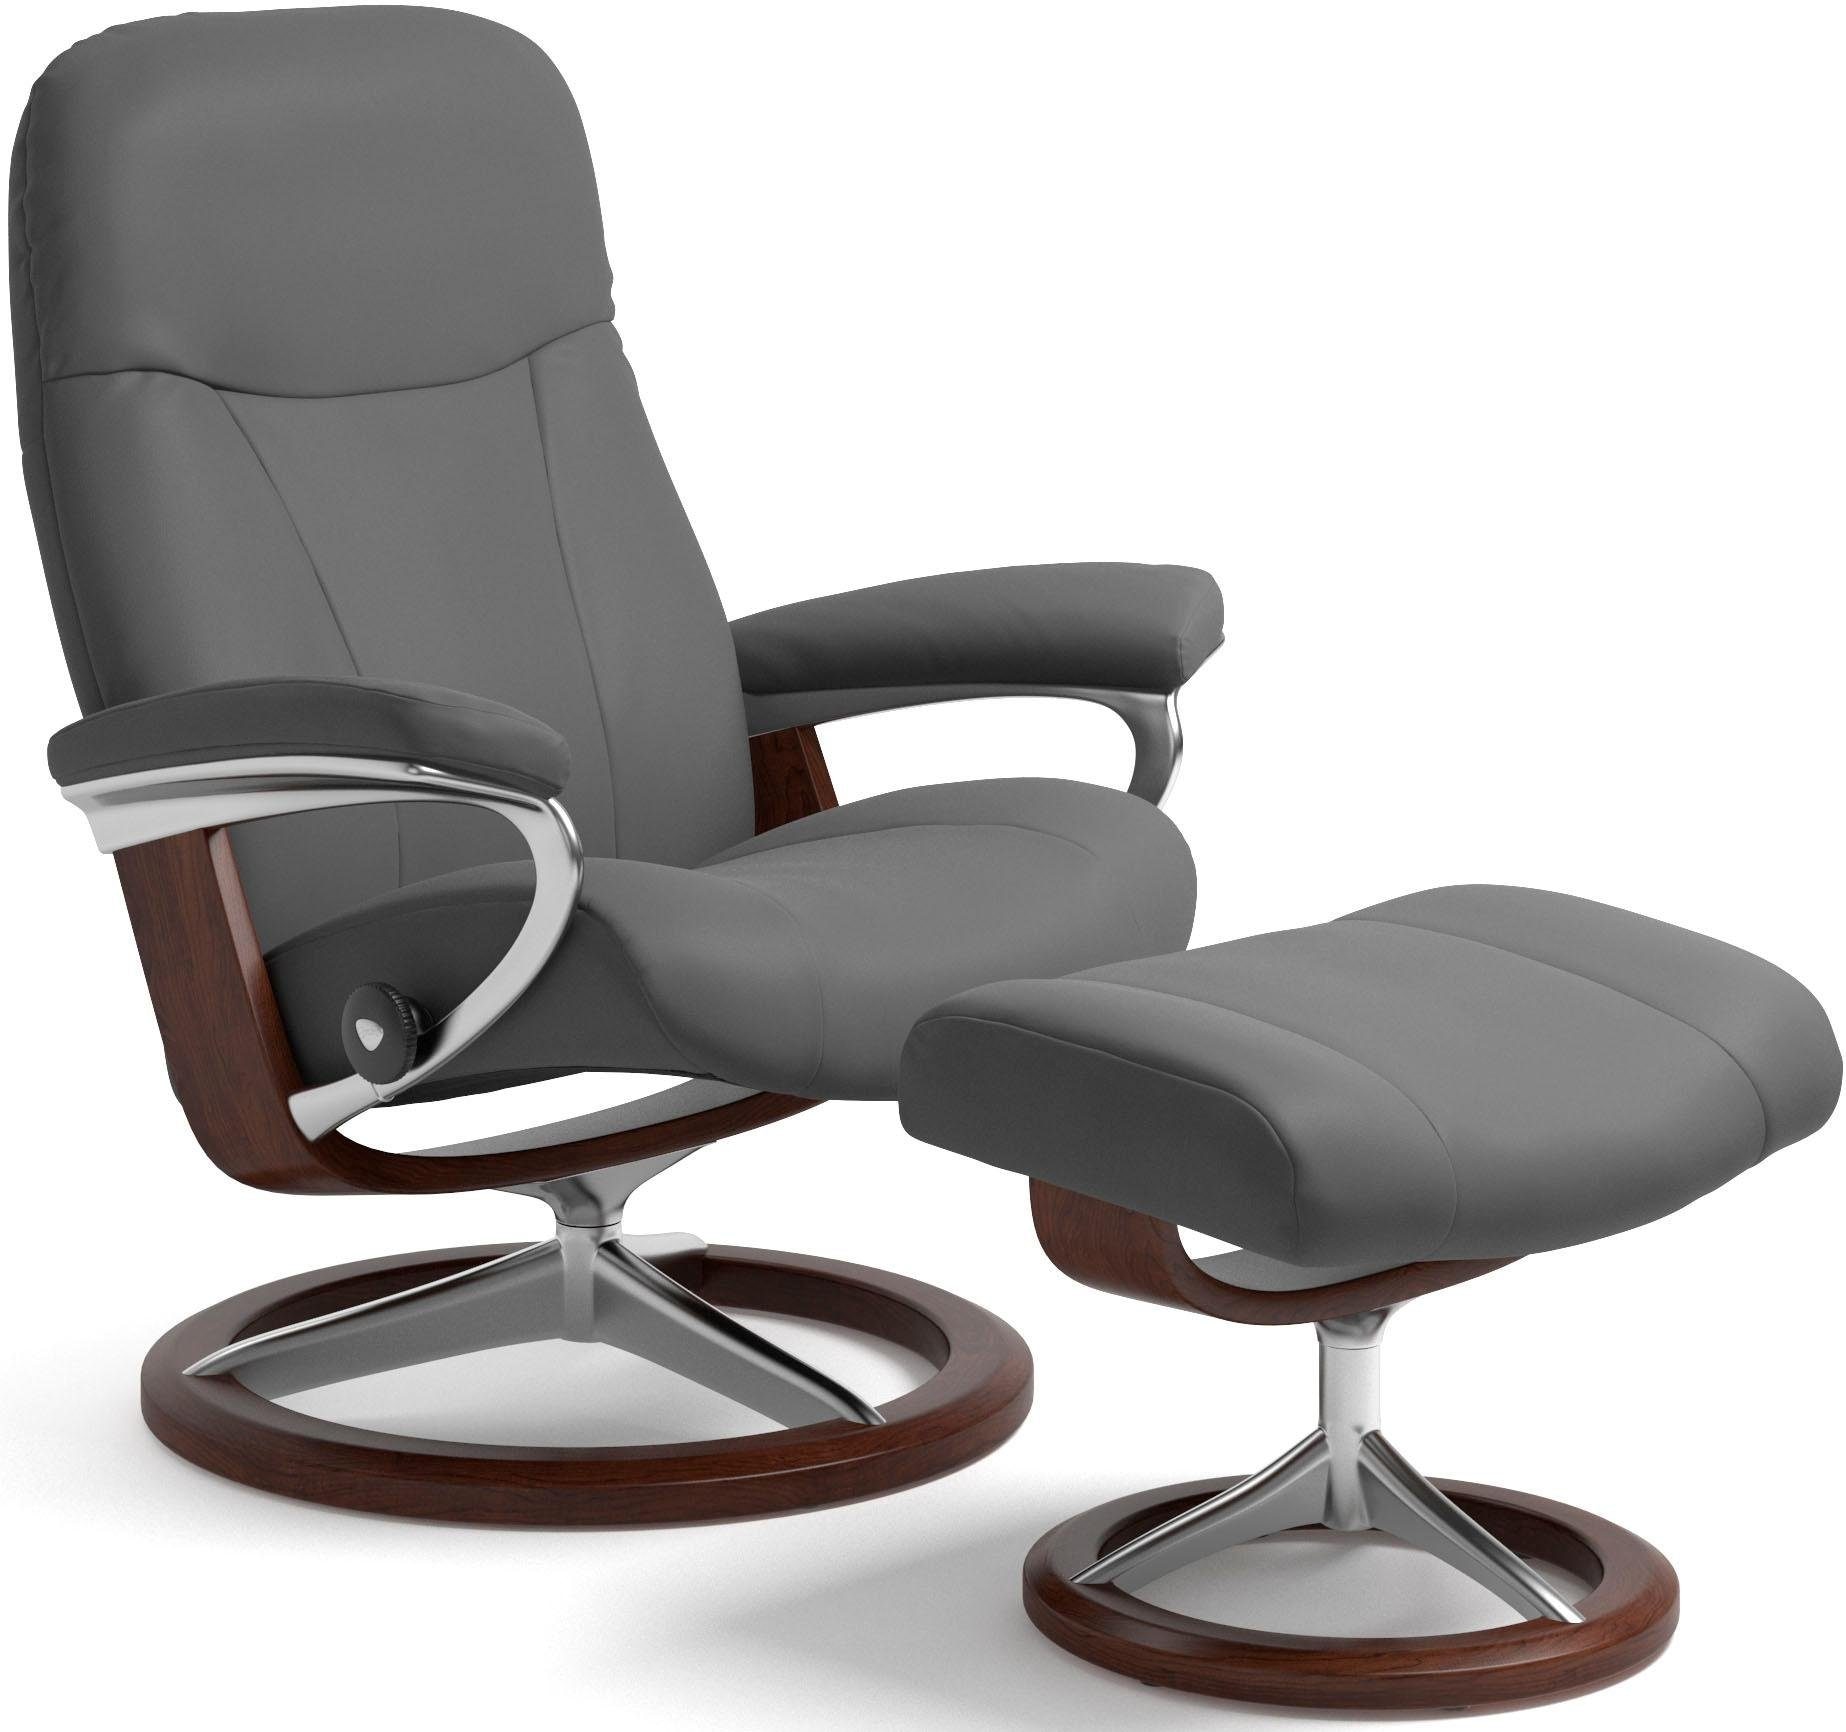 Stressless ® Atpalaiduojanti kėdė »Garda« (Set At...